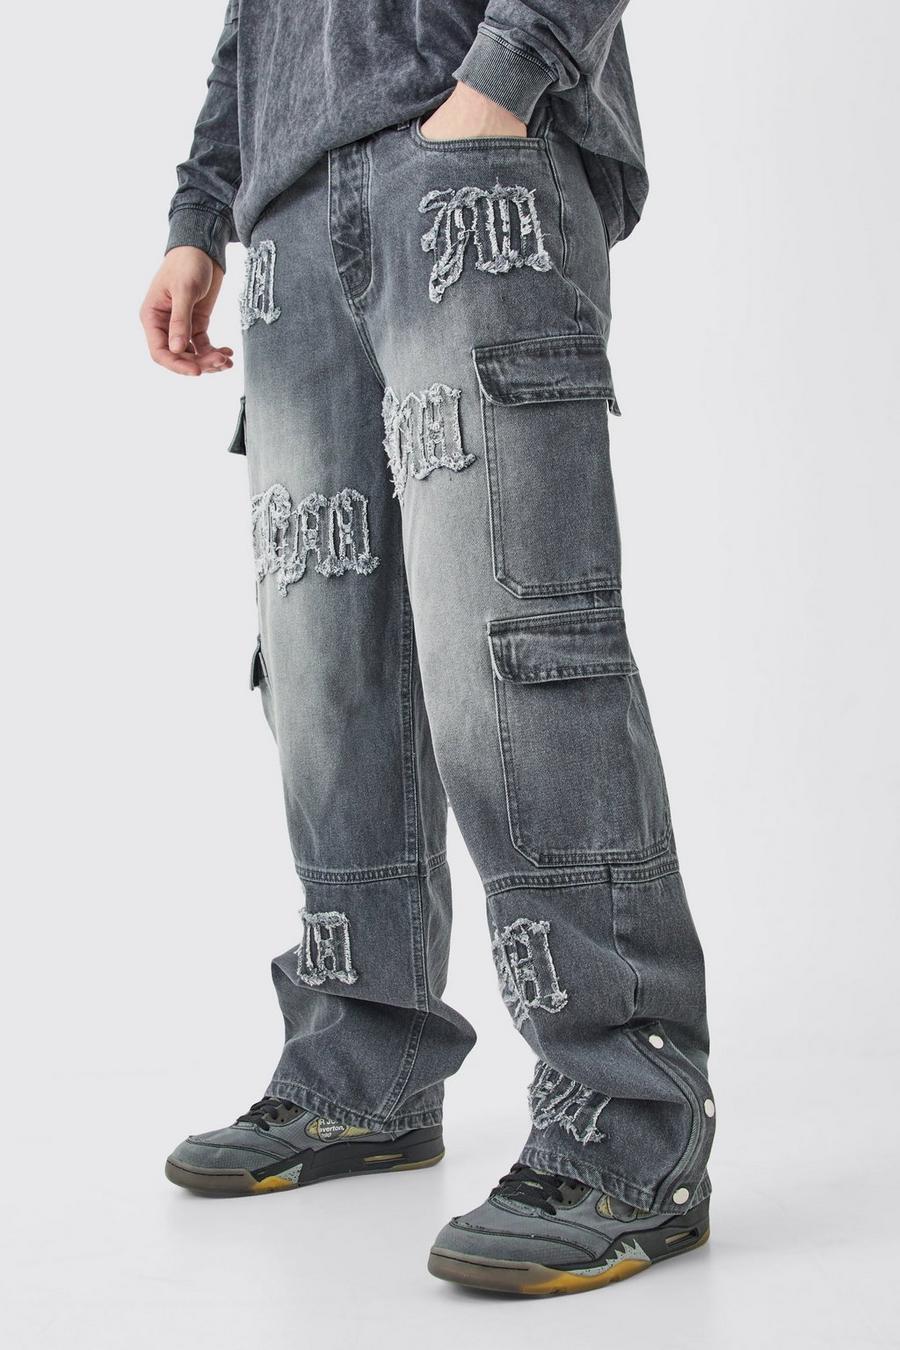 Jeans Tall extra comodi in denim rigido con applique BM e tasche Cargo, Grey